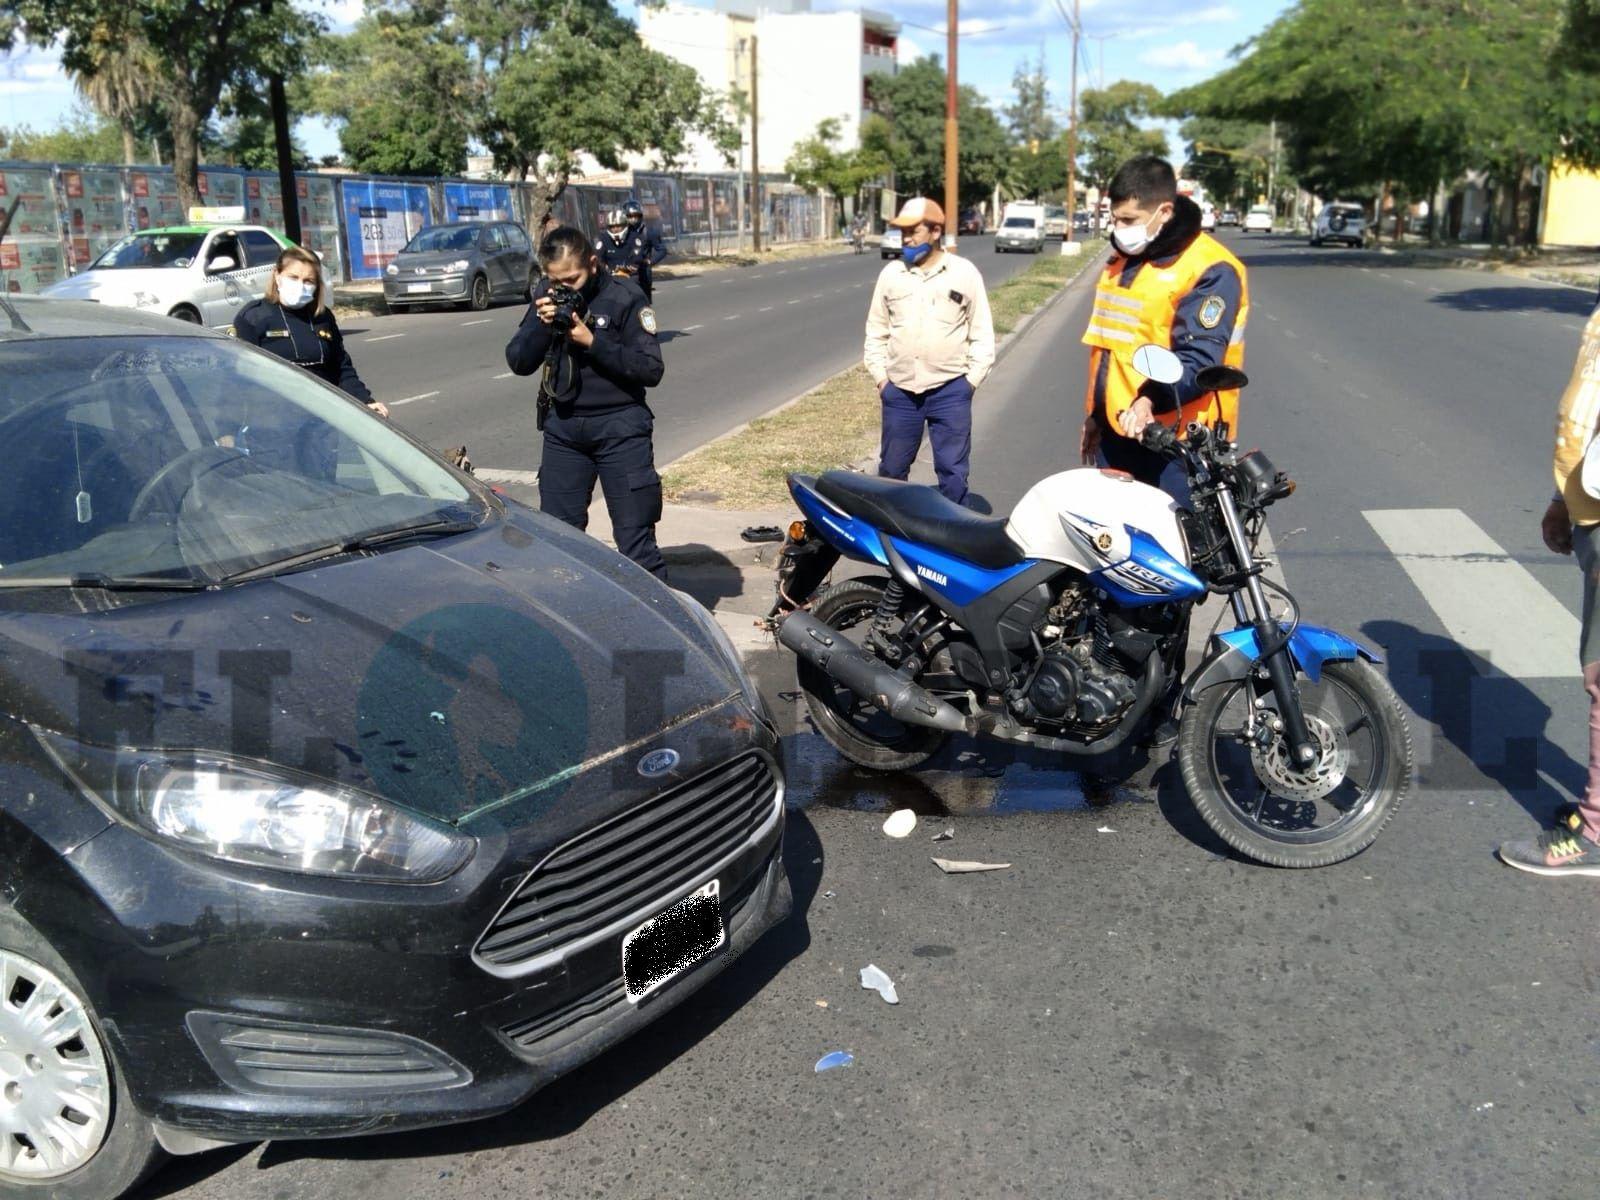 La siesta santiaguentildea se vio interrumpida por un violento choque entre un auto y una moto